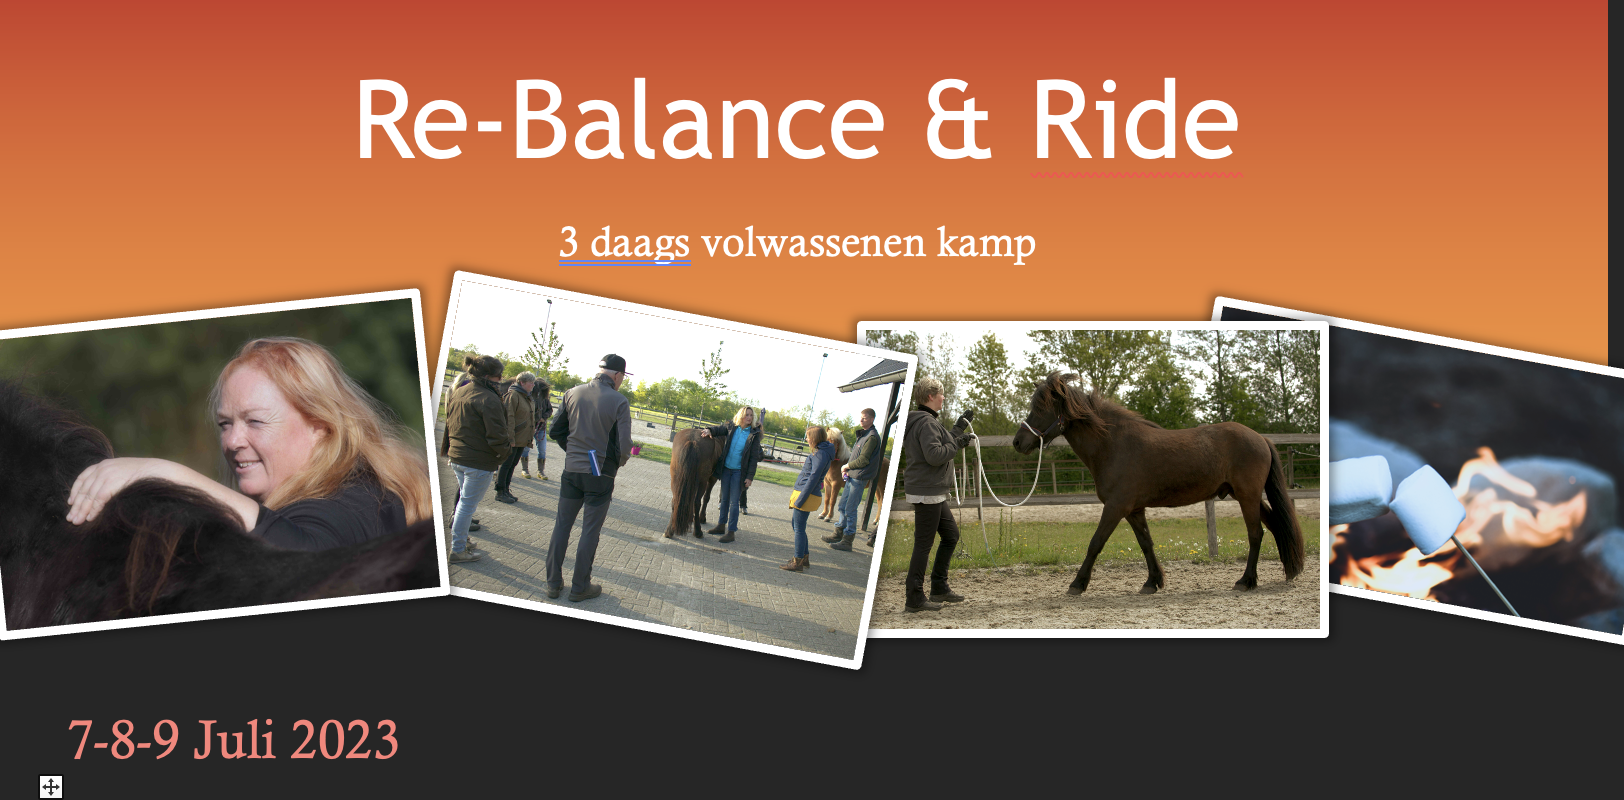 Re-Balance & Ride volwassenen 3 daagse